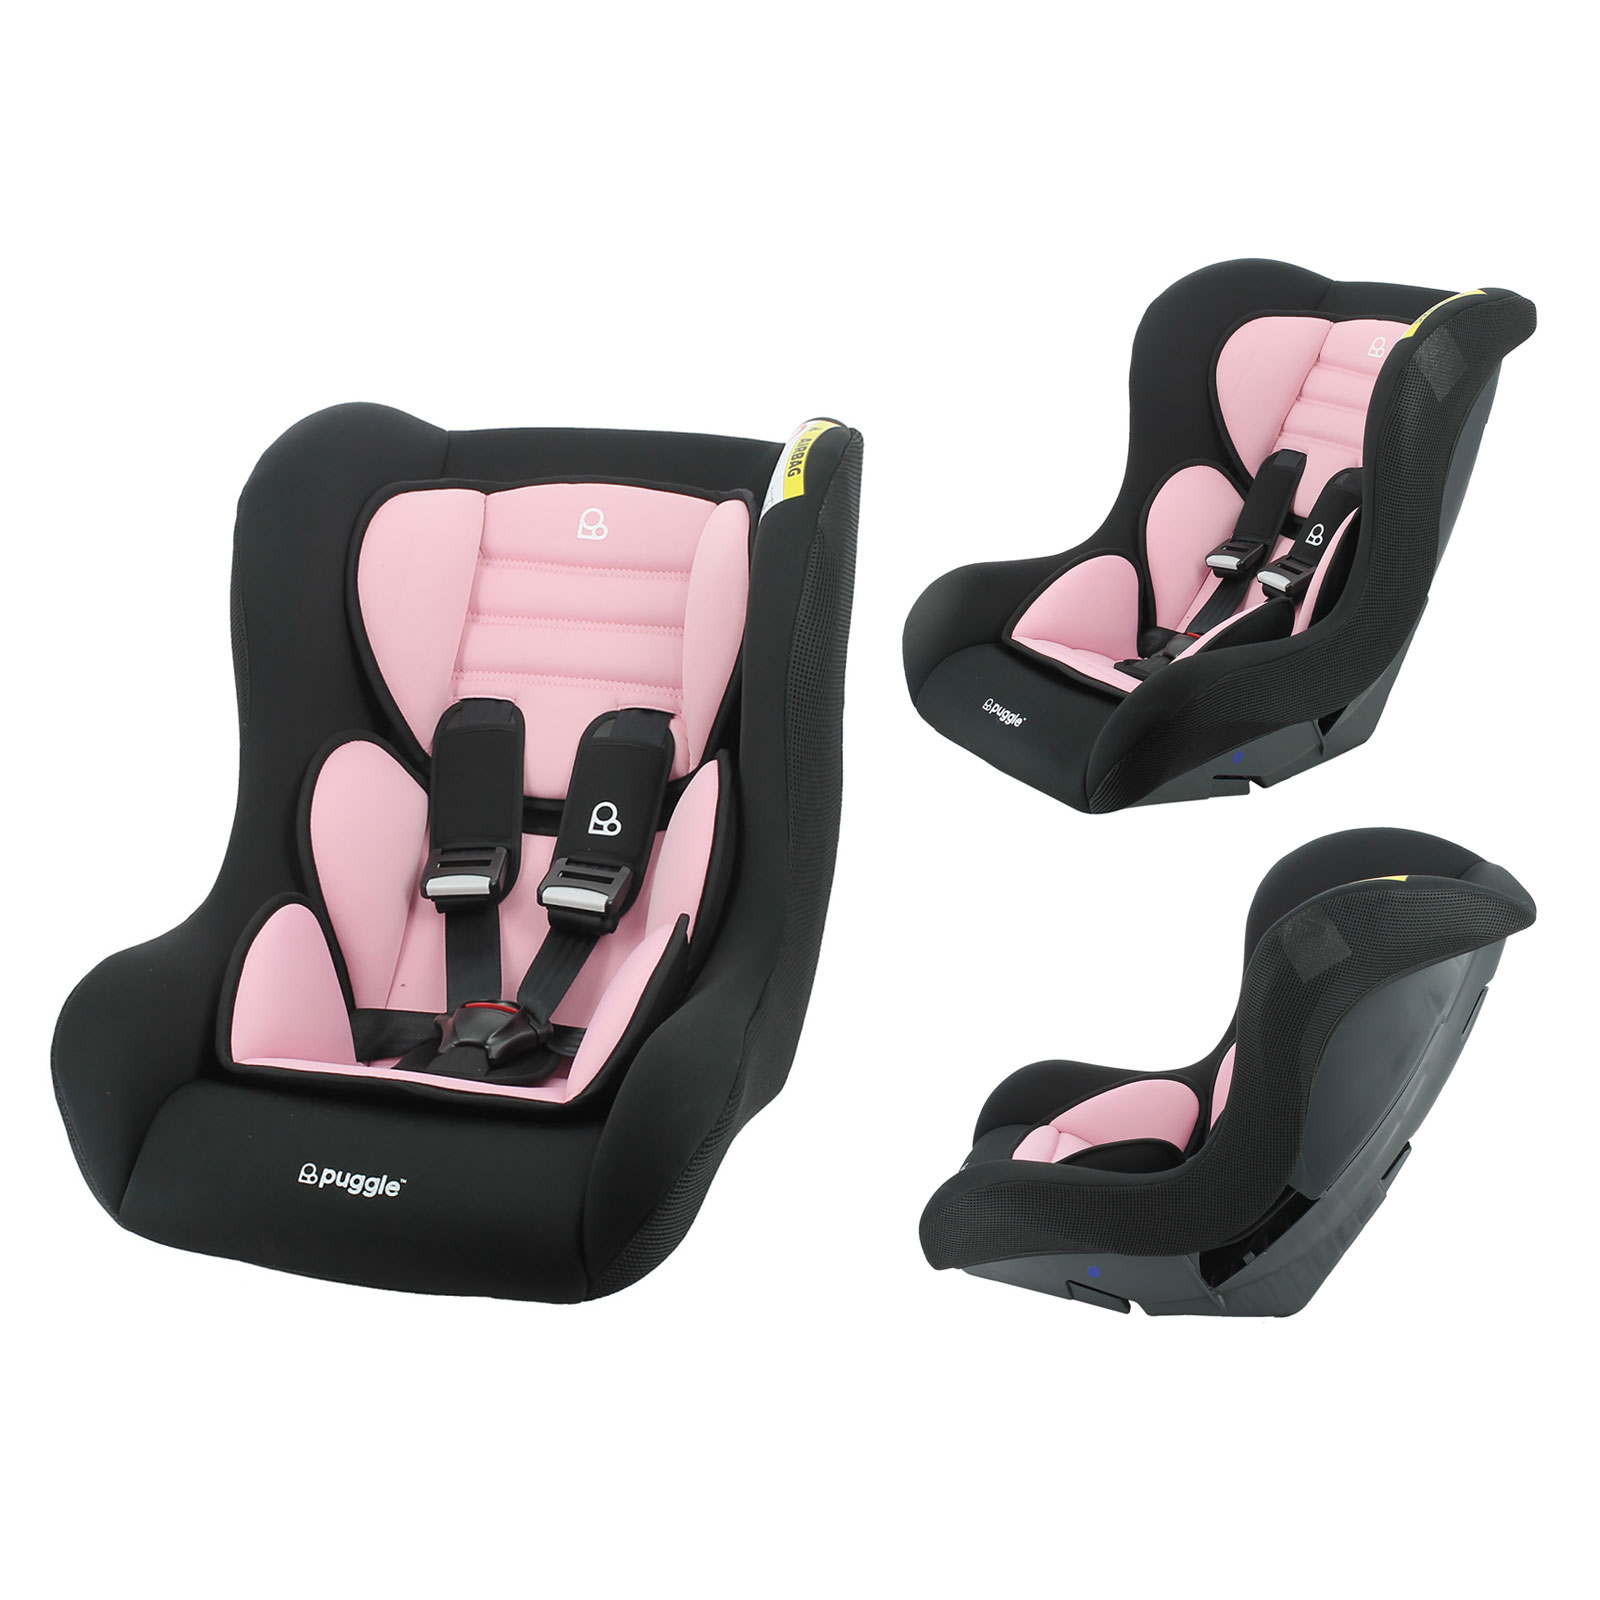 Puggle Flixton Comfort Safe Group 0+/1/2 Car Seat – Blush Pink (0-7 Years)